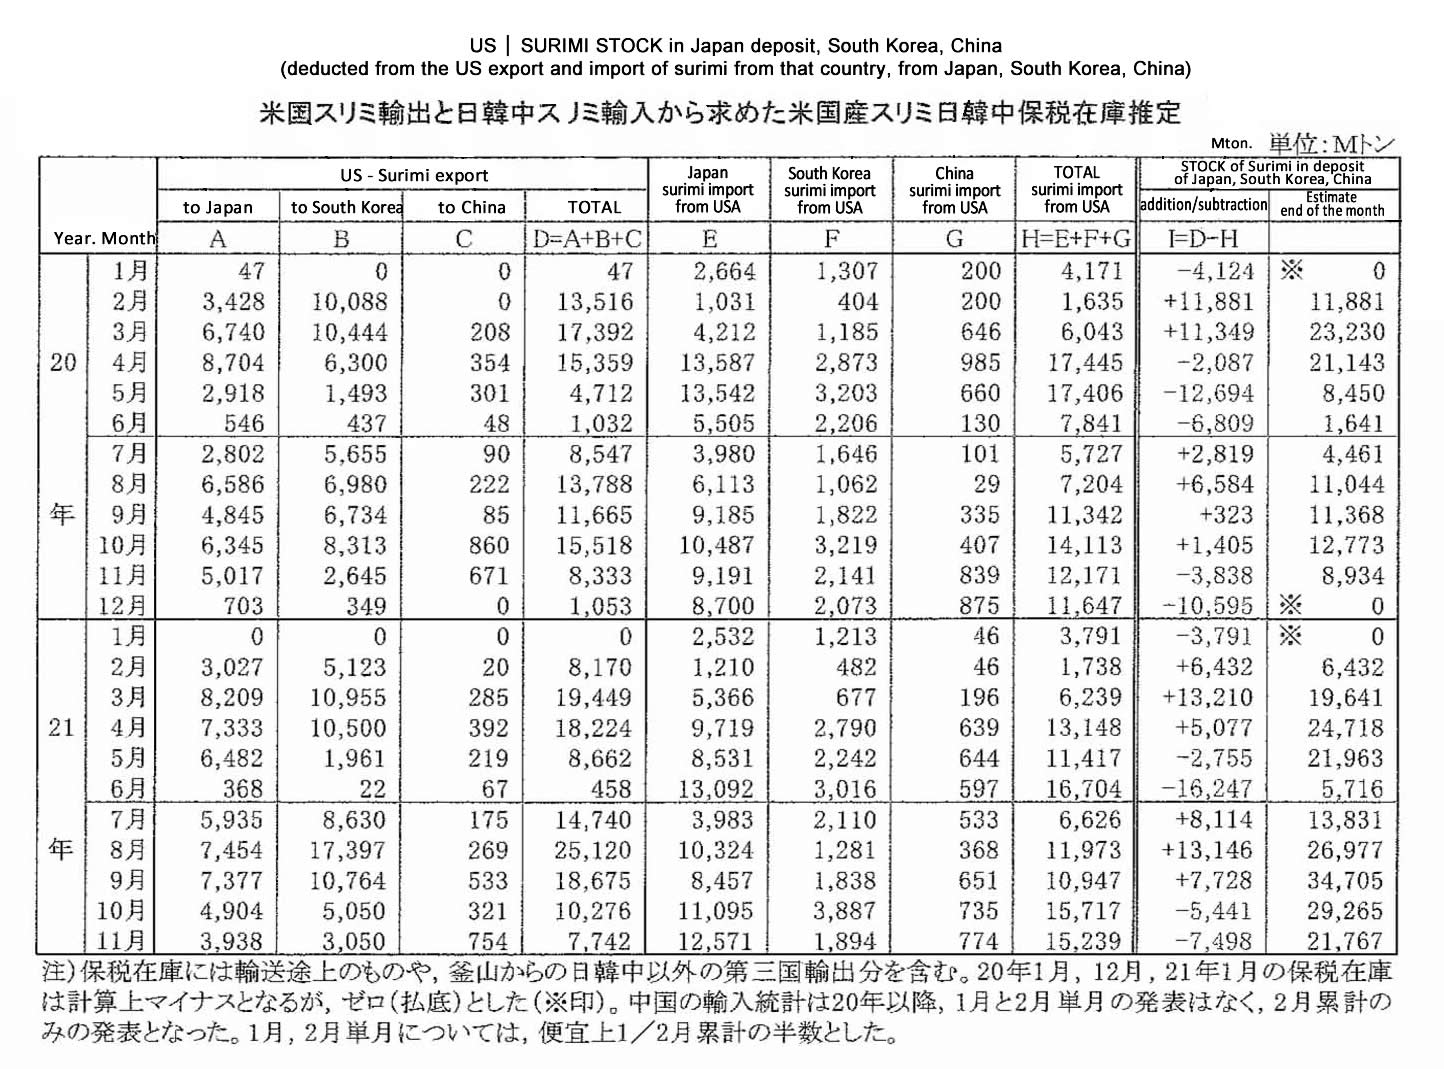 2022011205ing-Stock de surimi estadounidense en deposito de Japon-Corea del Sur-China FIS seafood_media(1).jpg